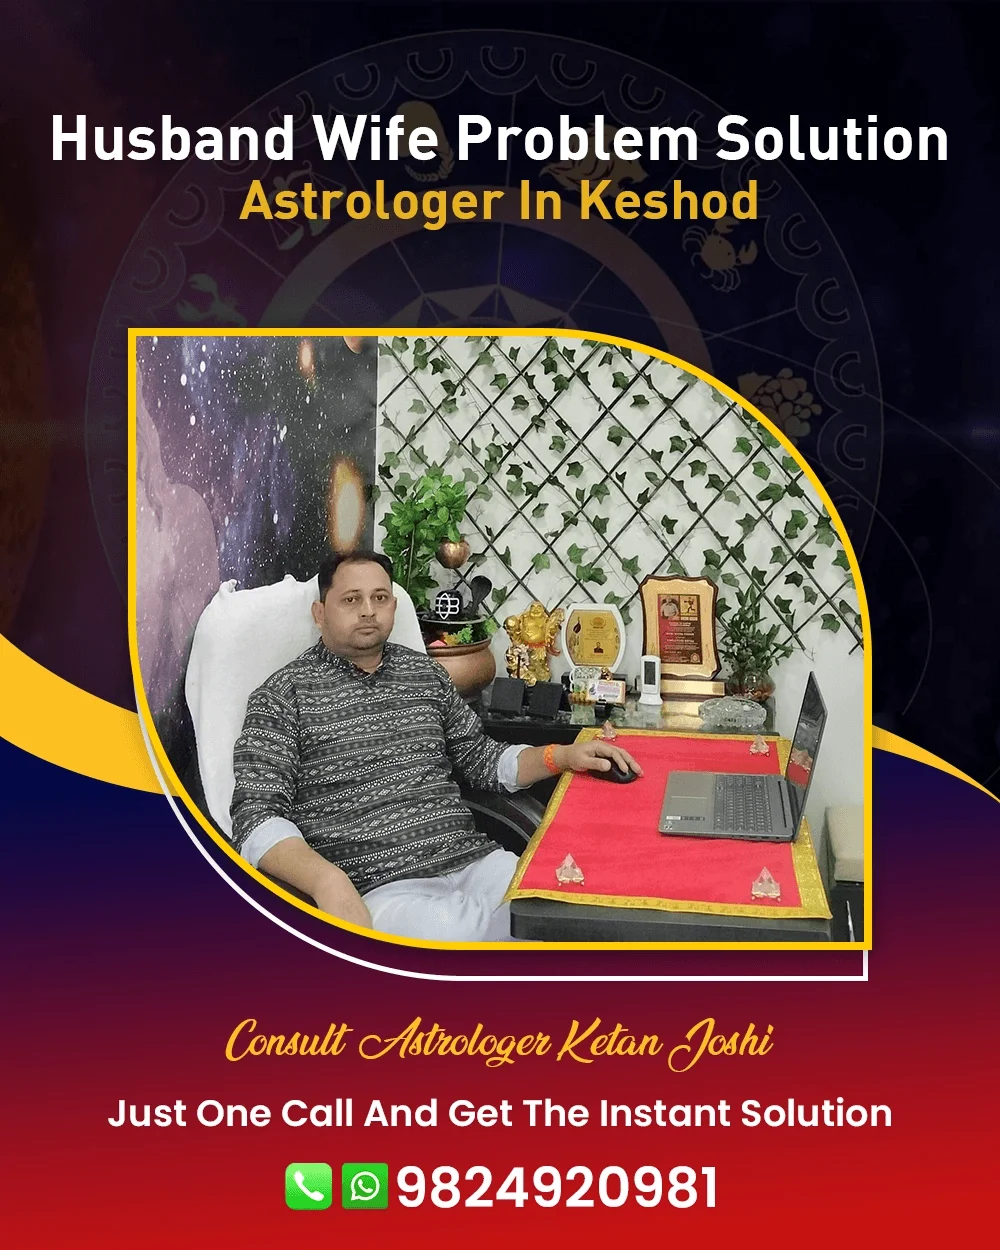 Husband Wife Problem Solution Astrologer In Keshod